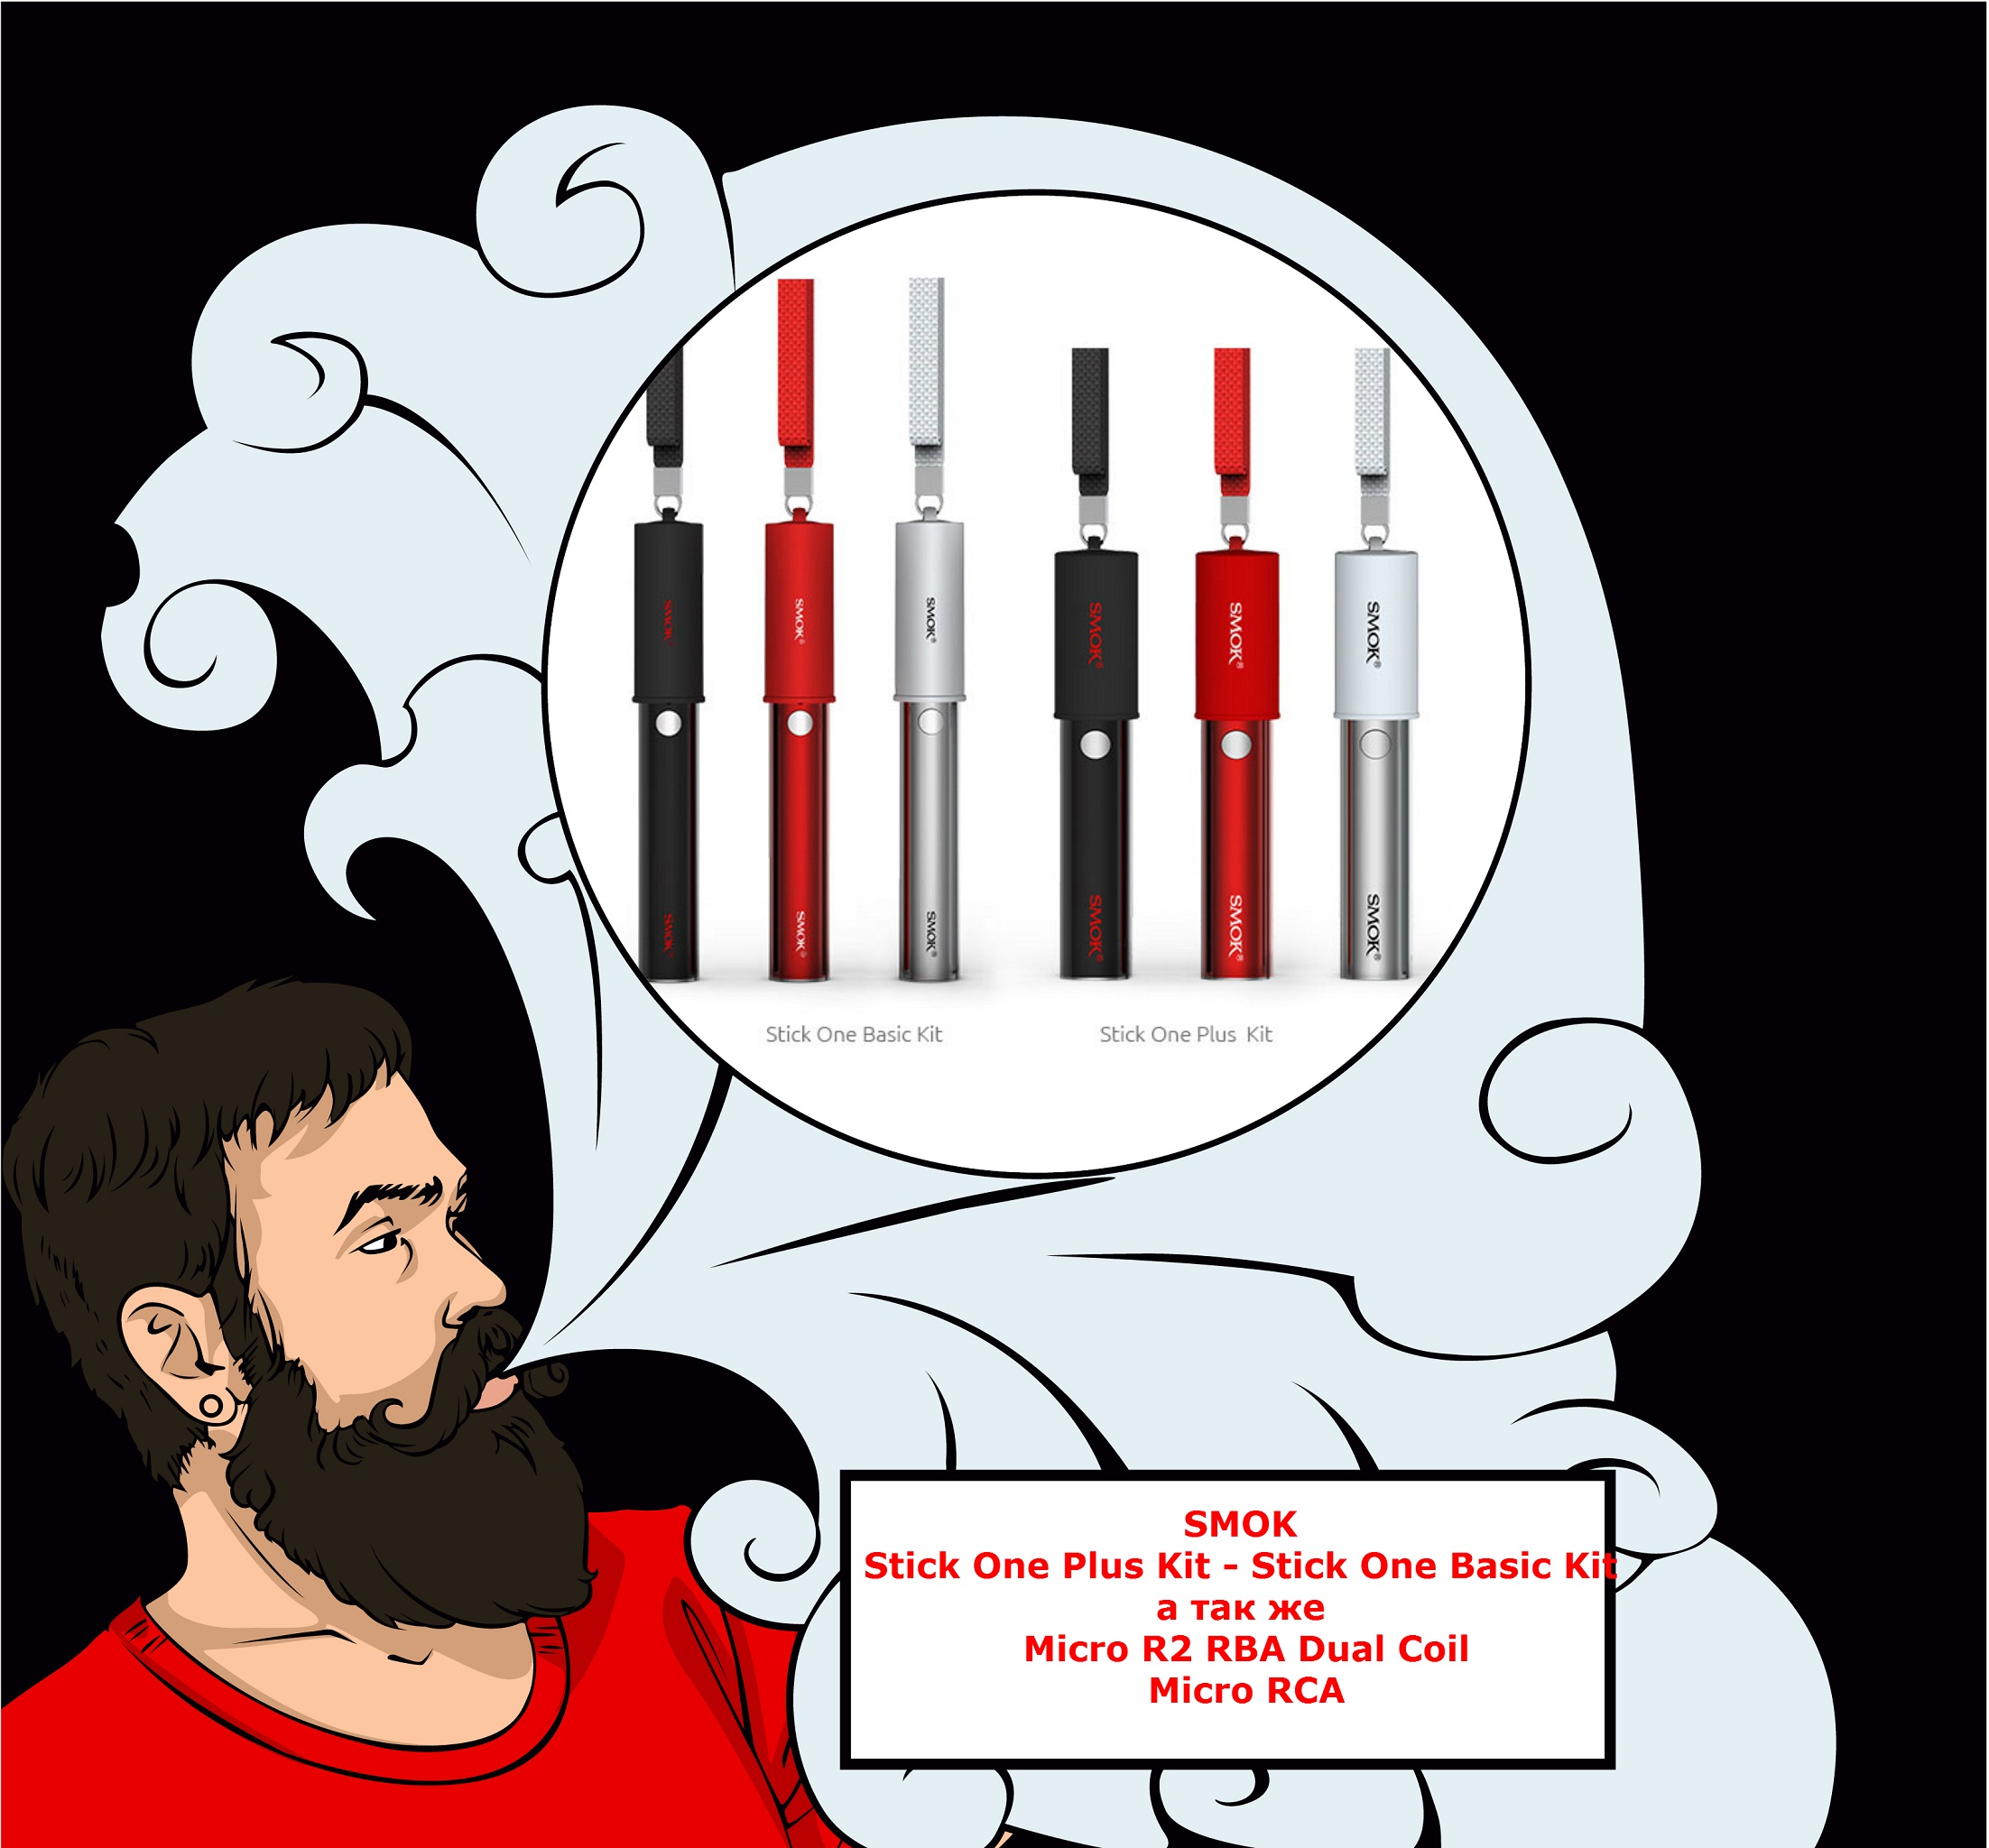 Smok Stick One Plus Kit, Smok Stick One Basic Kit + MICRO RCA, MICRO R2 RBA